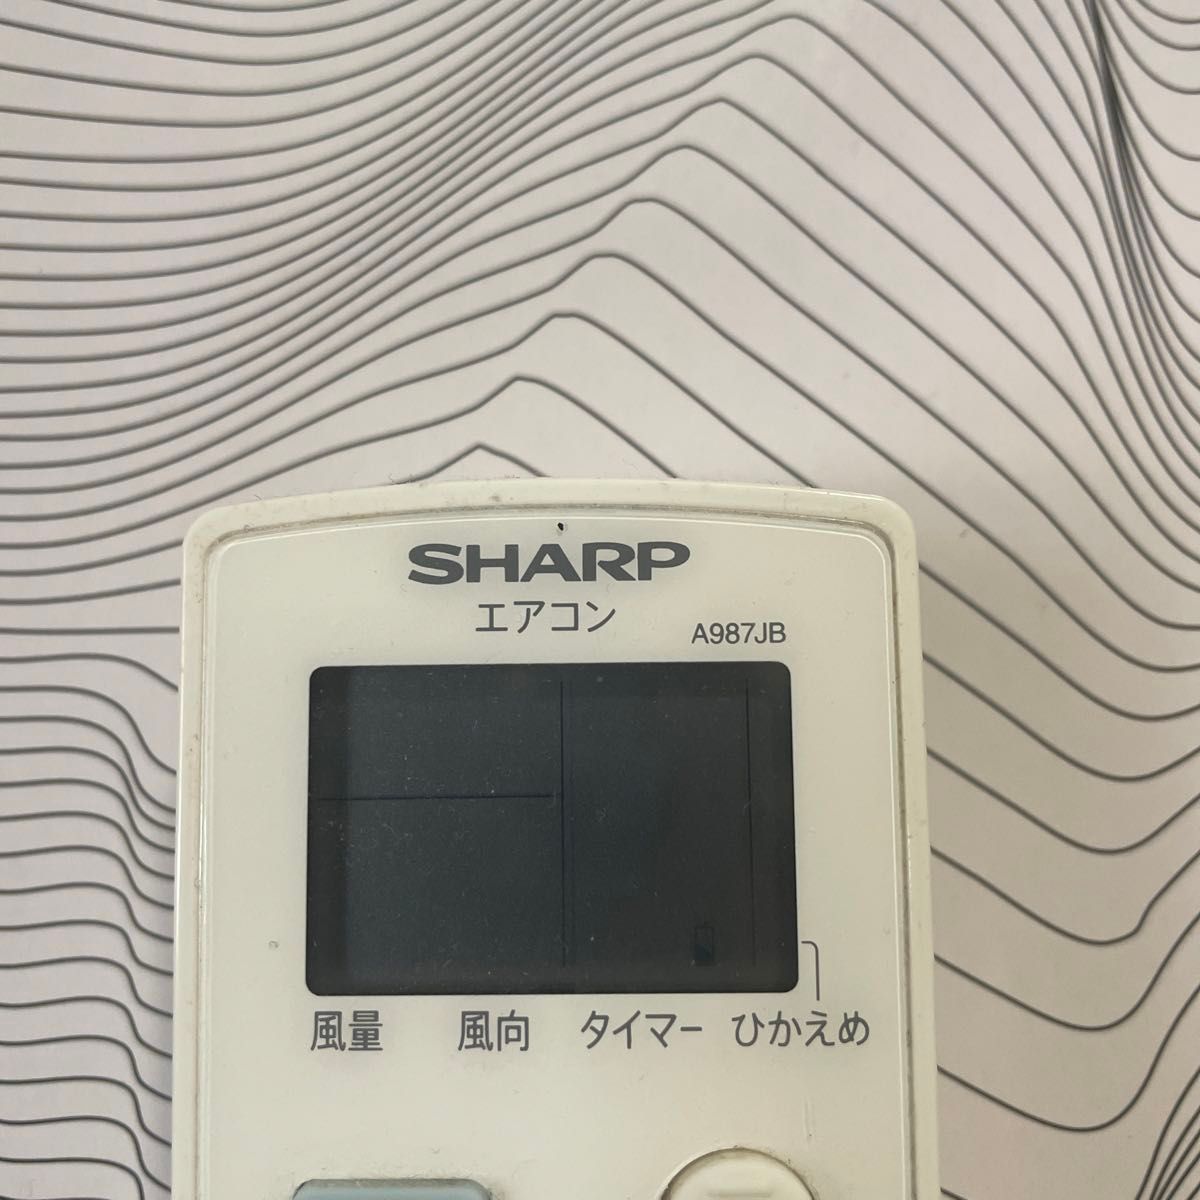 SHARP シャープ エアコンリモコン A987JB エアコン用リモコン